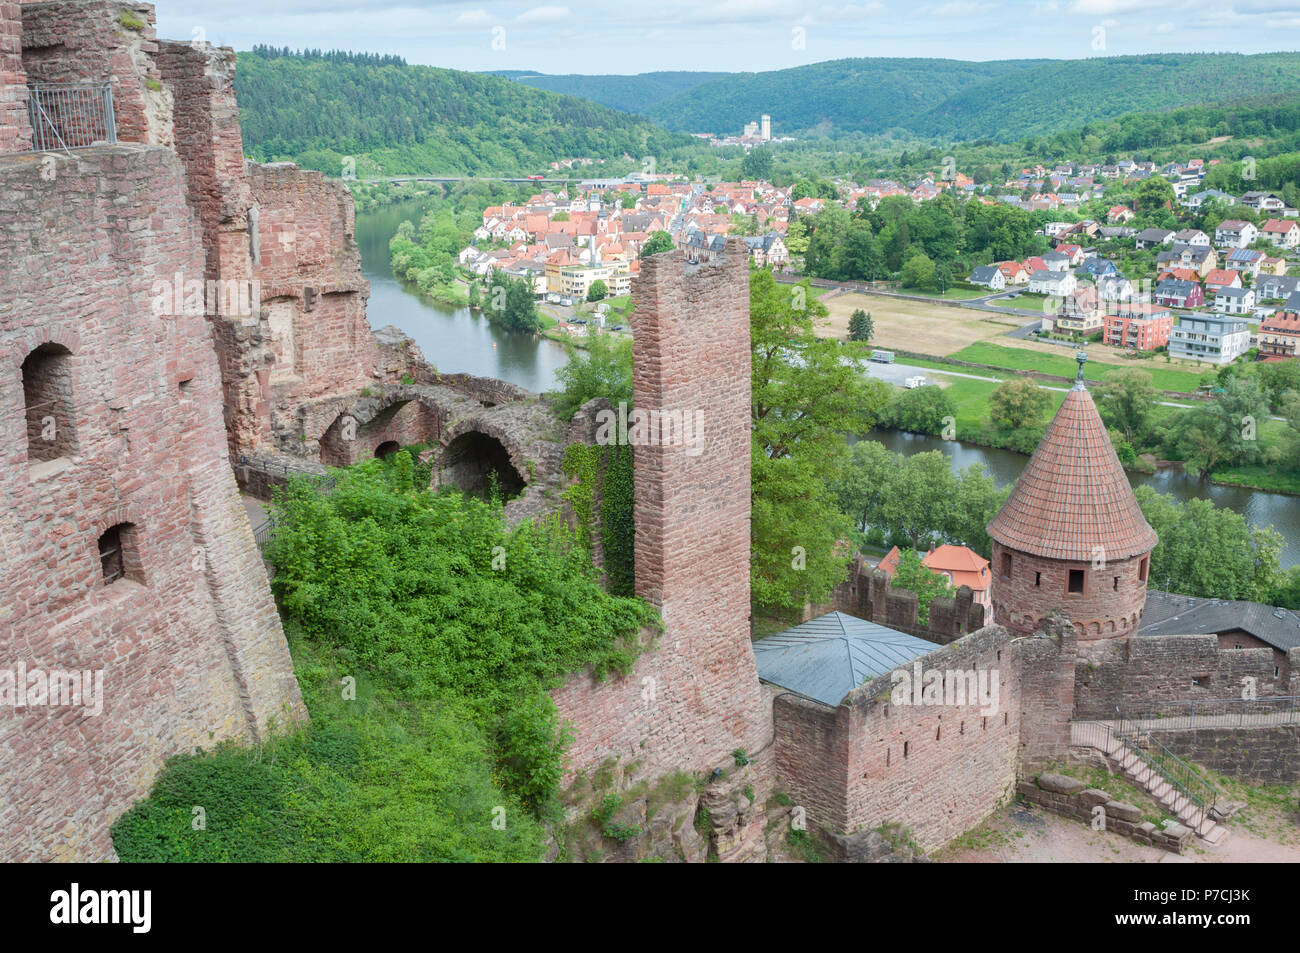 Castle Wertheim, Wertheim, Main-Tauber, Main river, Tauber river, Odenwald, Spessart, Baden-Wuerttemberg, Heilbronn-Franconia, Germany Stock Photo